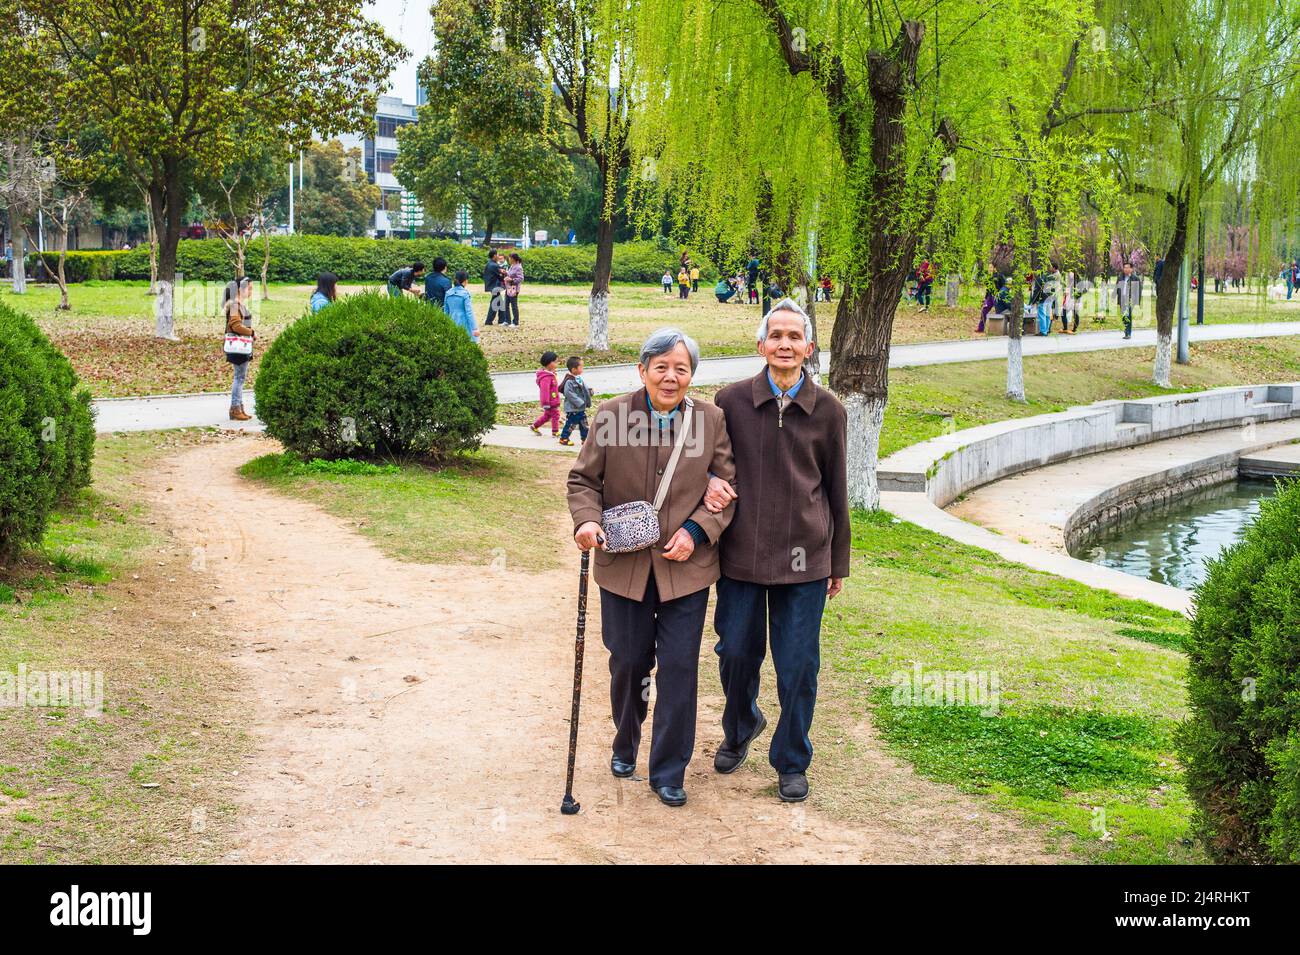 Ältere Männer und Frauen, die nach draußen gehen. Ein älteres Paar, 80 Jahre alt, sich gegenseitig hilfend, Arm in Arm, läuft auf einem Park, Frau hält einen Spaziergang Stockfoto